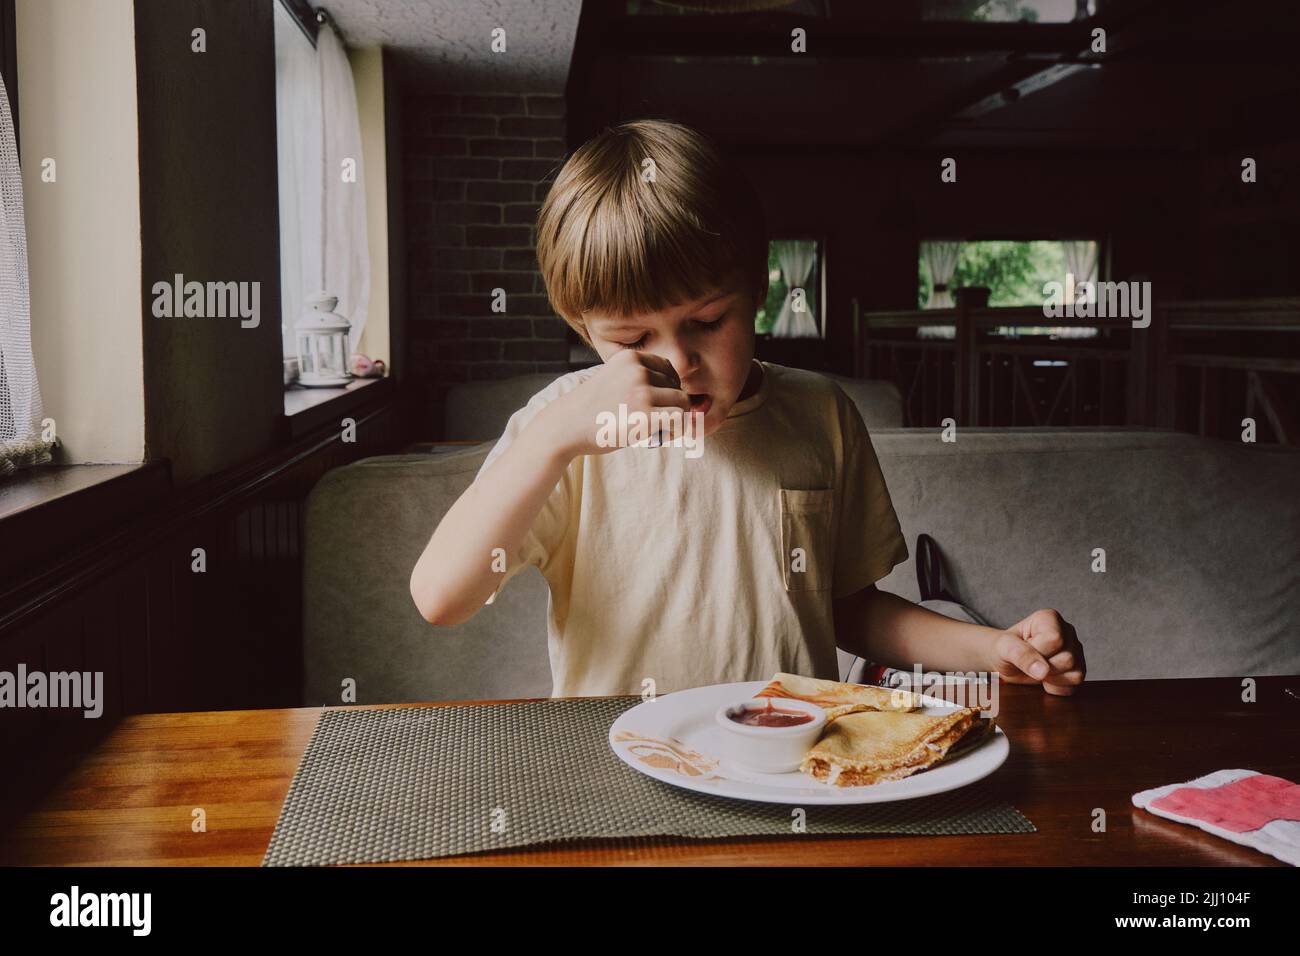 Cute healthy preschool kid boy eats in cafe. Stock Photo